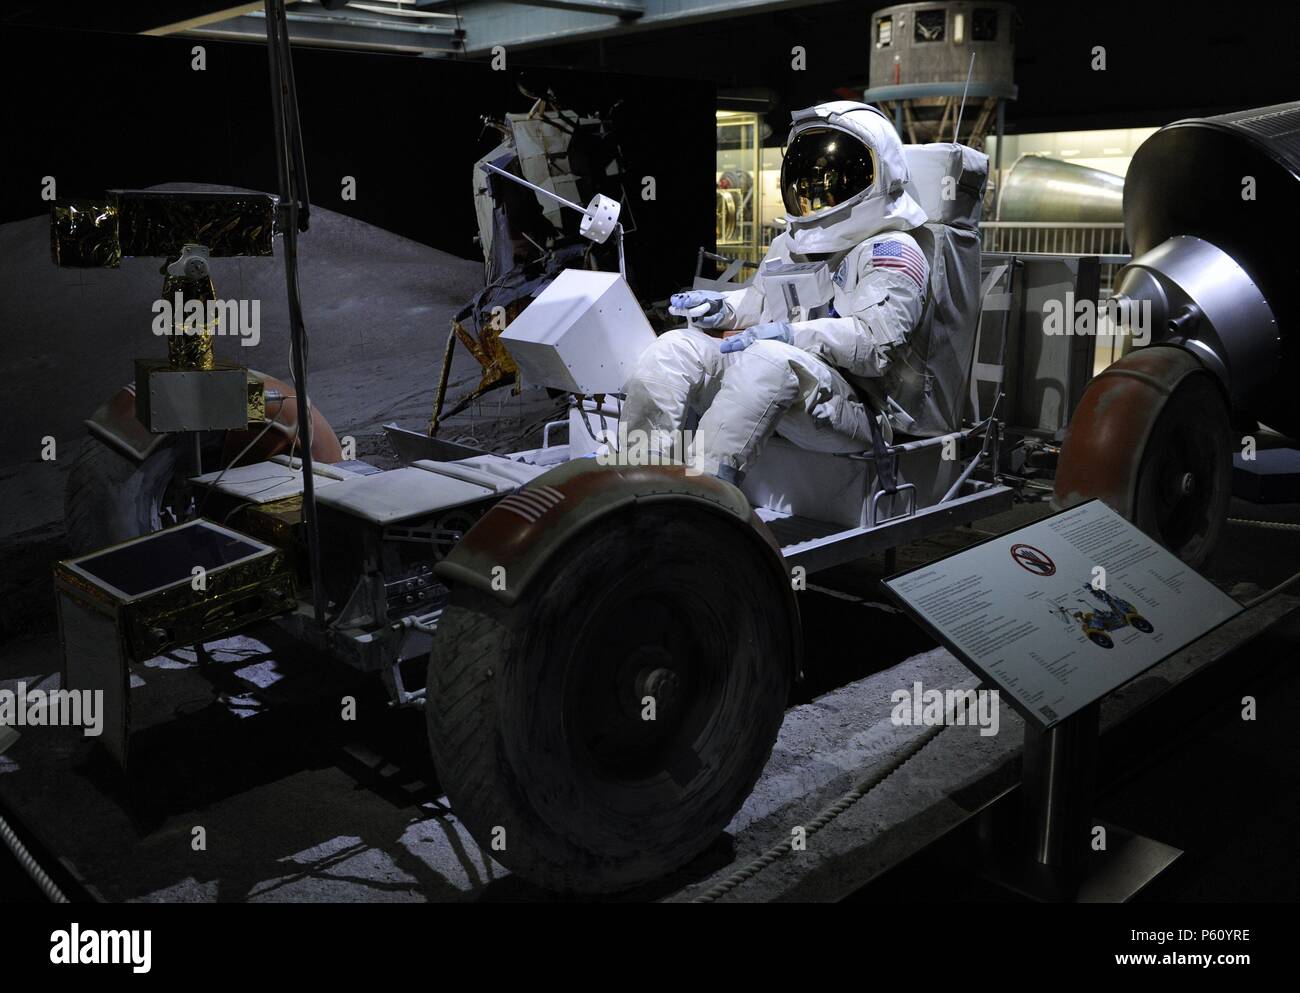 Rover lunaire (LRV) ou lunar rover était un pile quatre roues rover utilisé sur la Lune au cours des trois missions de l'American programme Apollo, en 1971 et 1972. Deutches Museum. Munich. L'Allemagne. Banque D'Images